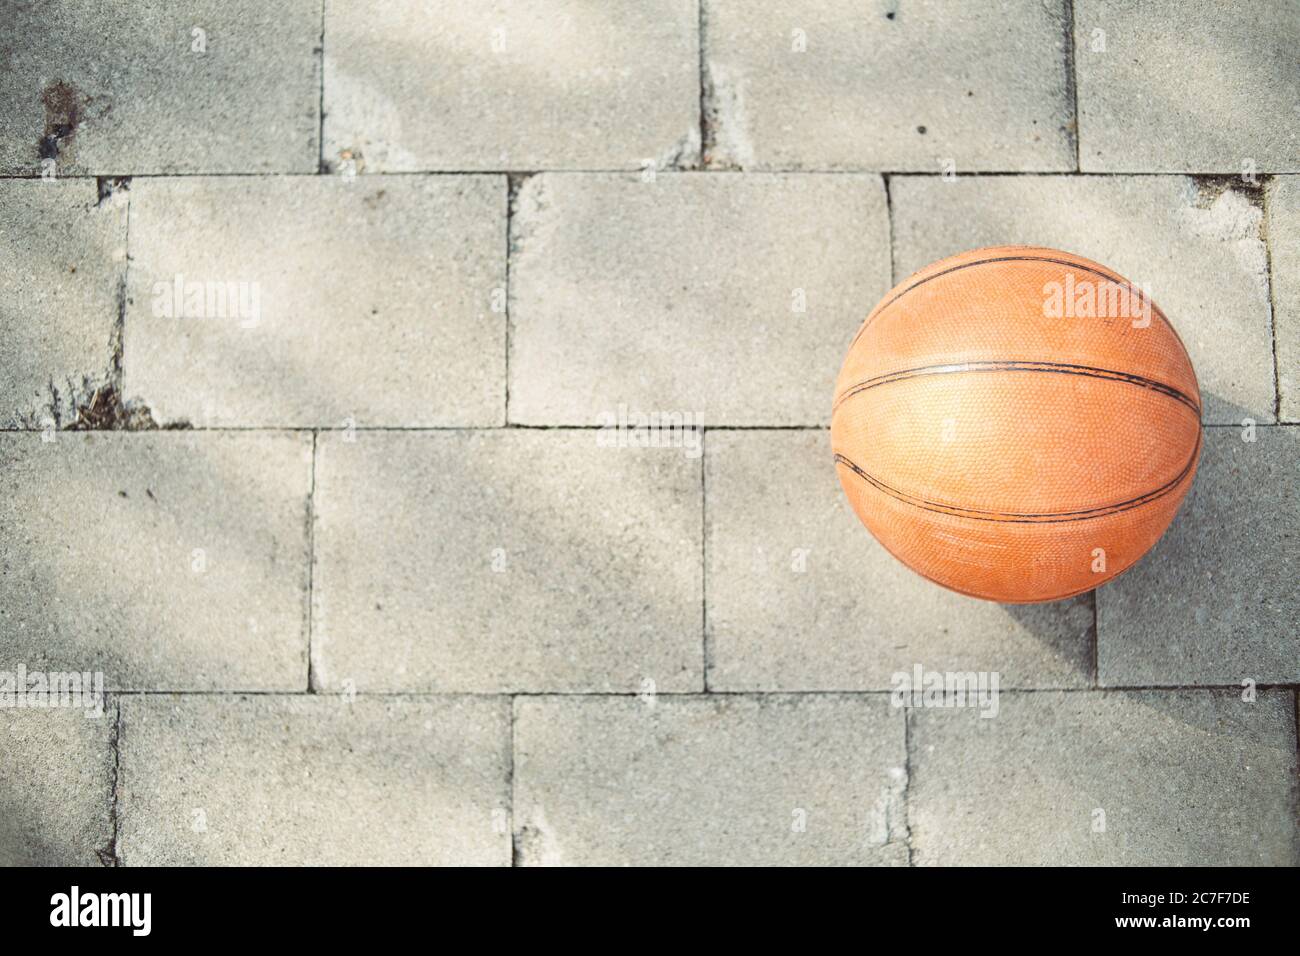 High angle shot of a basketball ball on the pavement Stock Photo